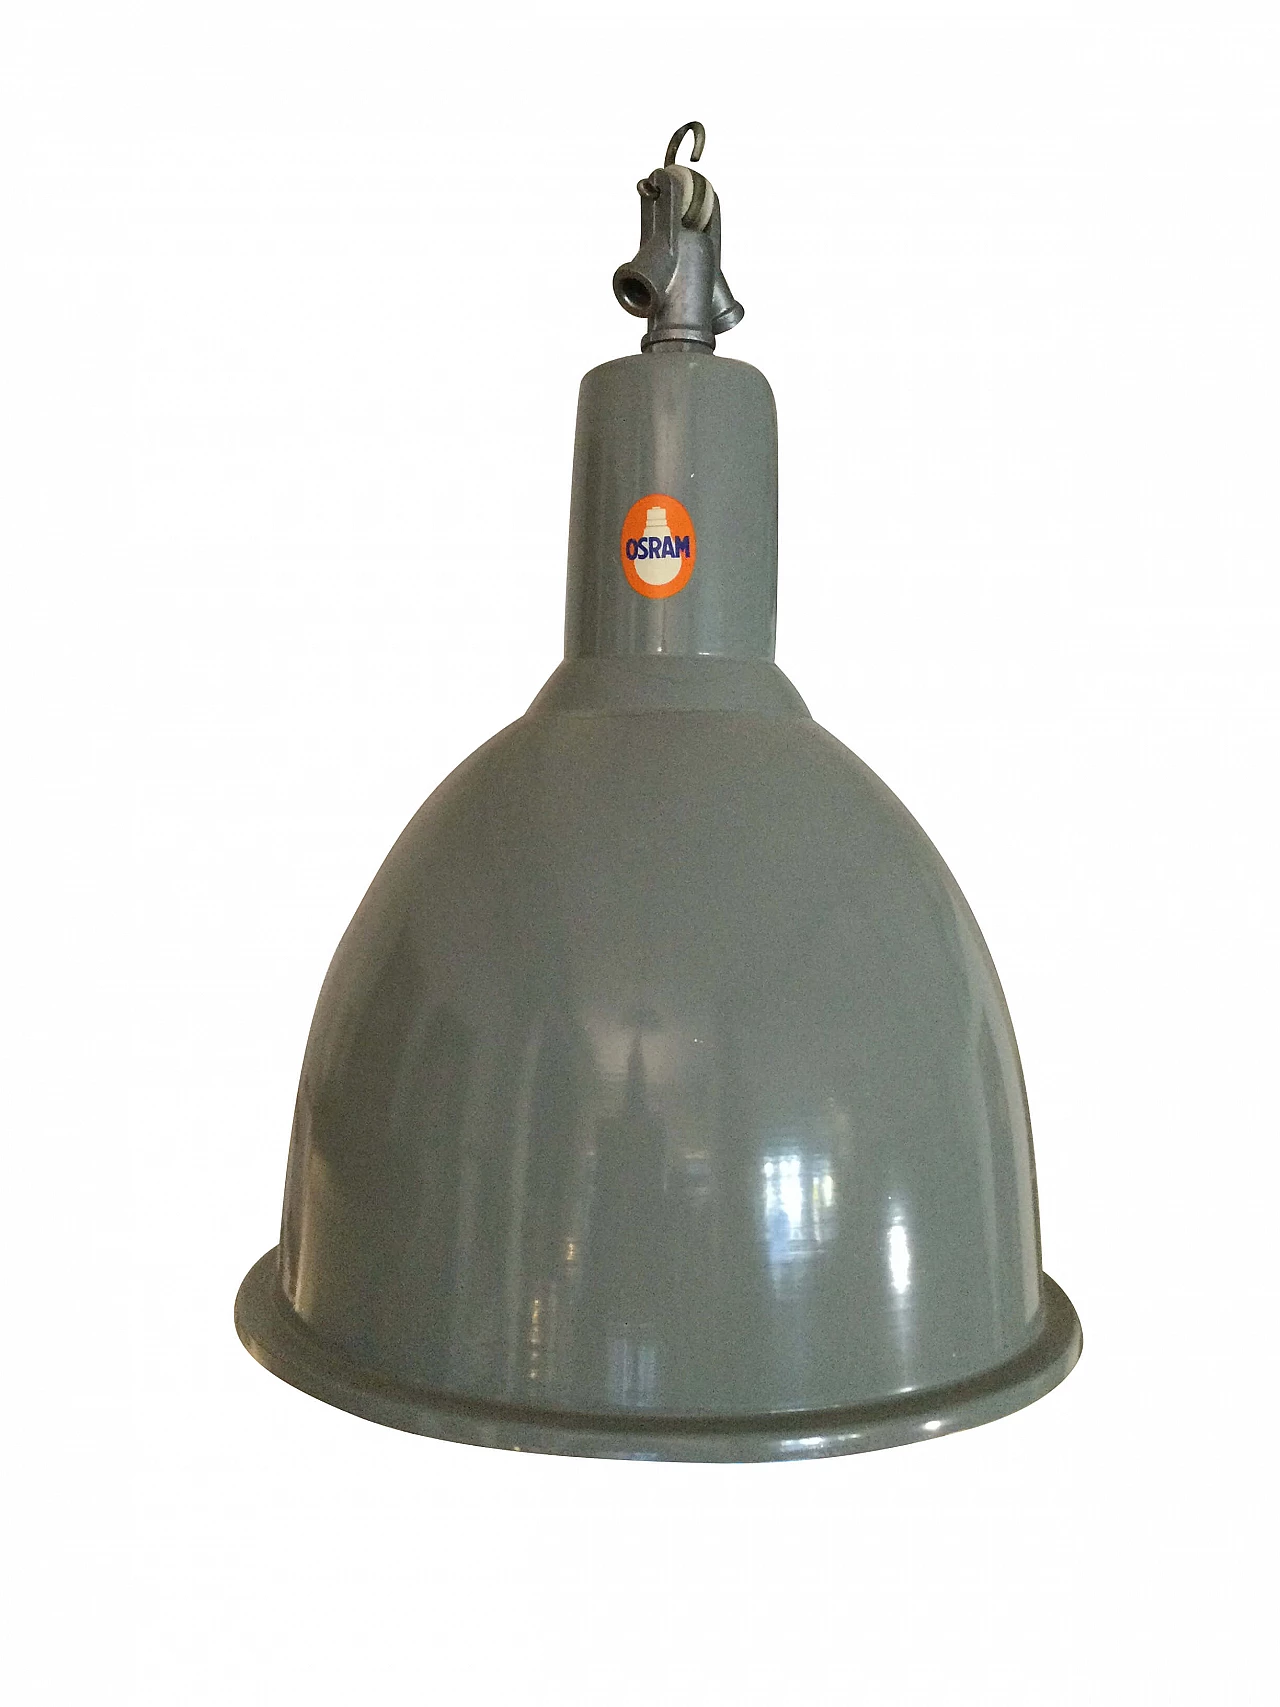 Lampada in alluminio verniciato Osram, anni '70 1282943